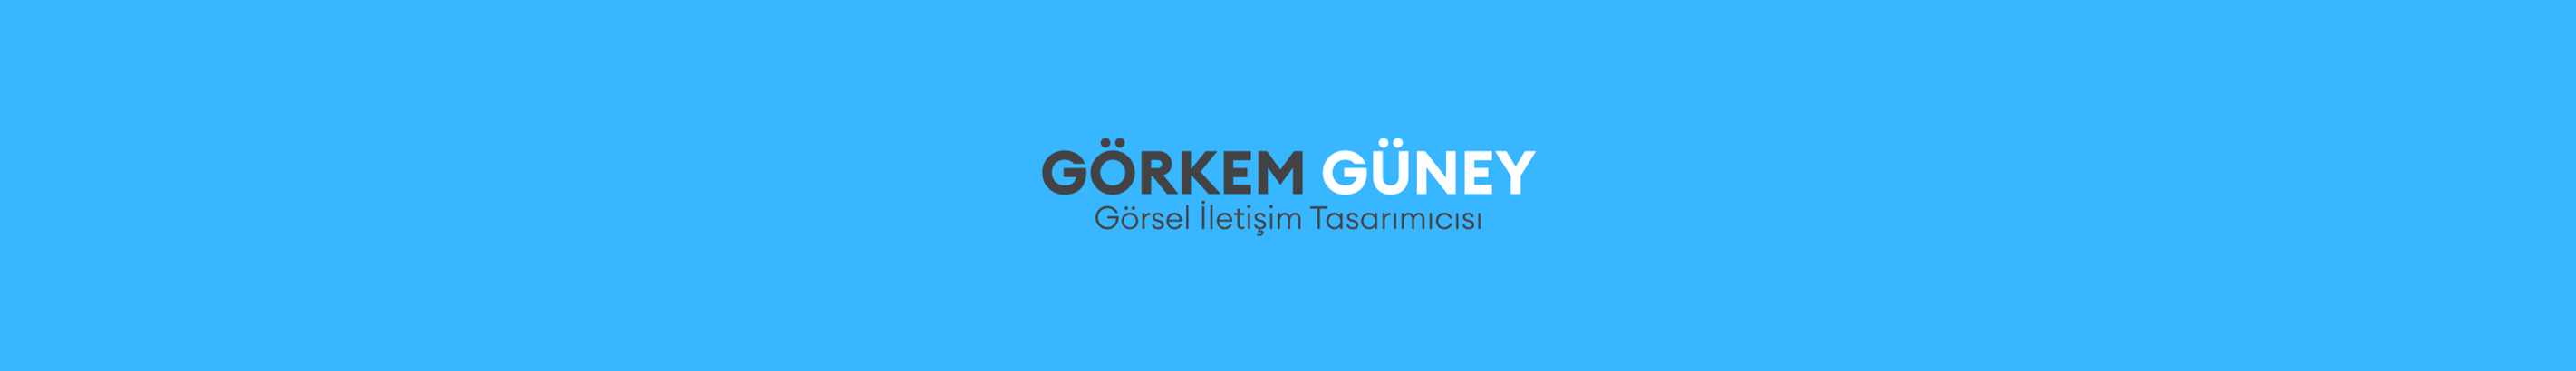 Görkem Güney's profile banner